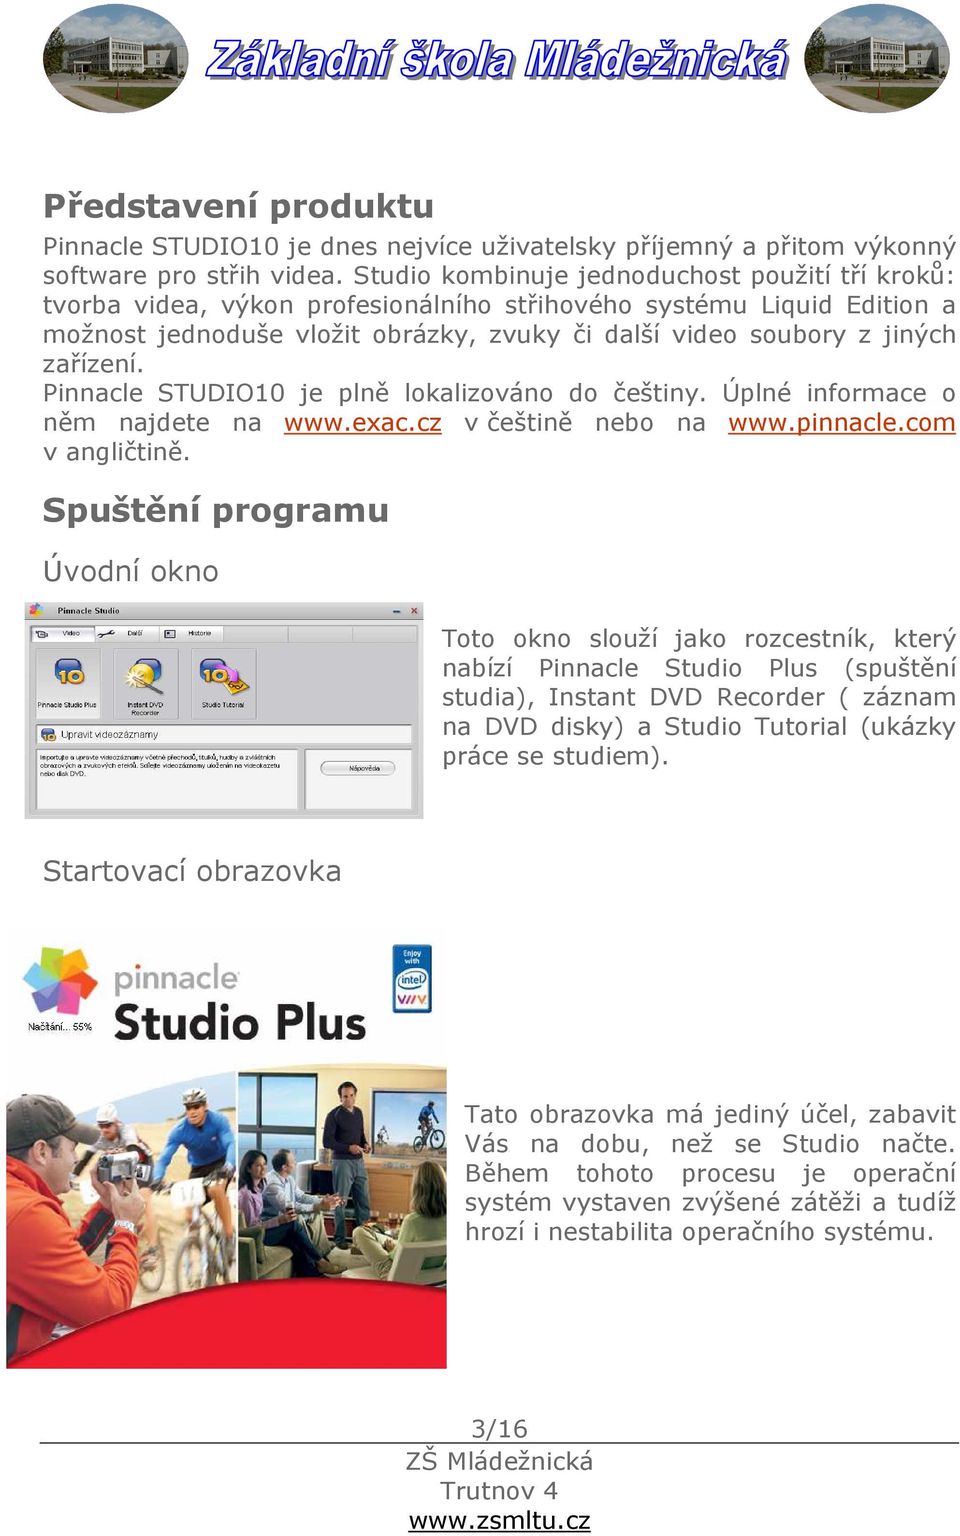 zařízení. Pinnacle STUDIO10 je plně lokalizováno do češtiny. Úplné informace o něm najdete na www.exac.cz v češtině nebo na www.pinnacle.com v angličtině.